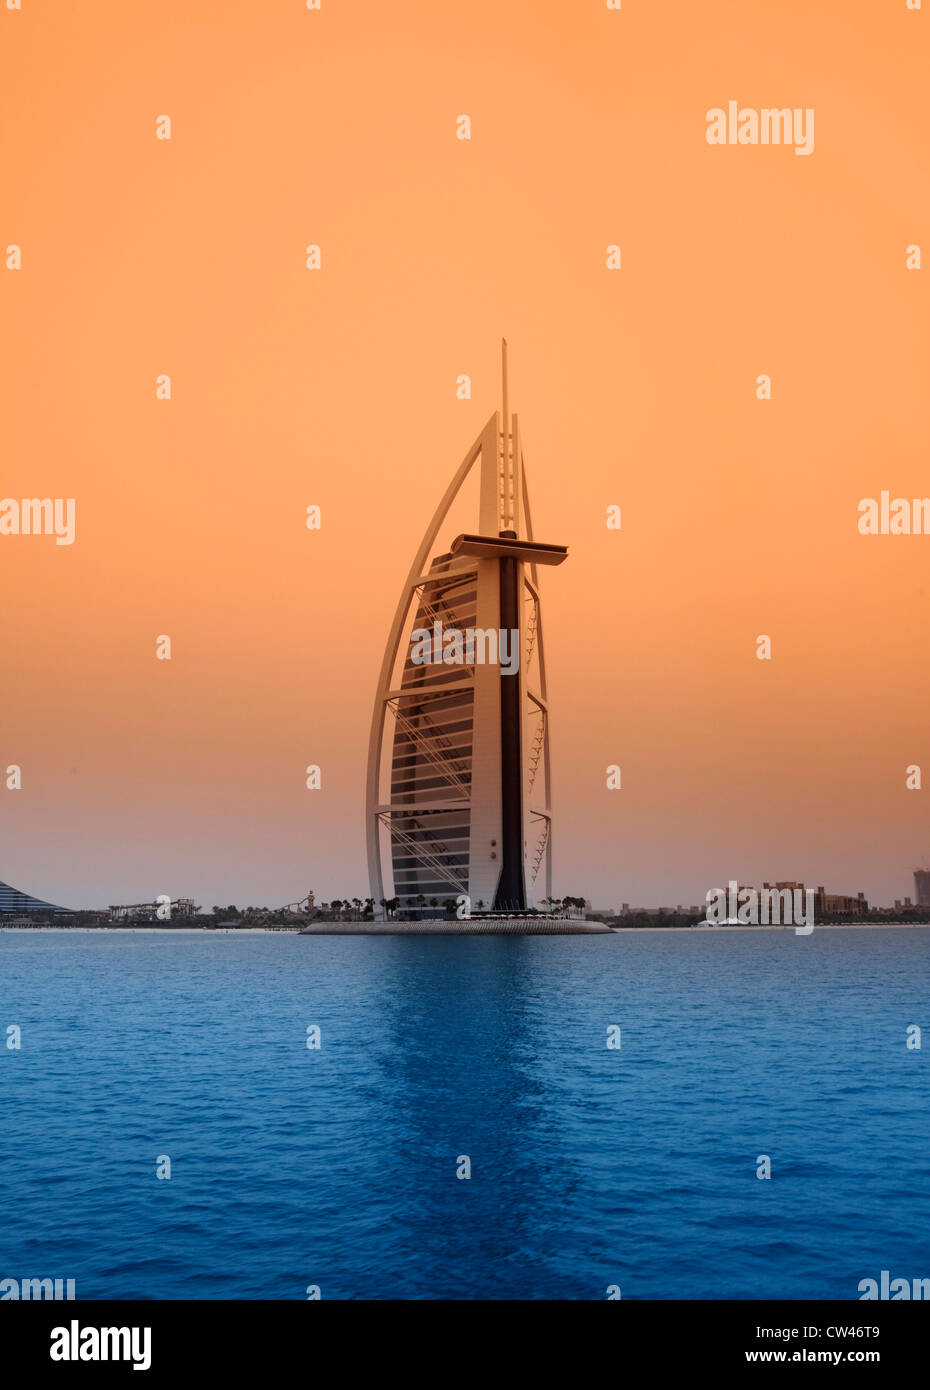 3477. Burj al Arab, Dubai, UAE. Stock Photo